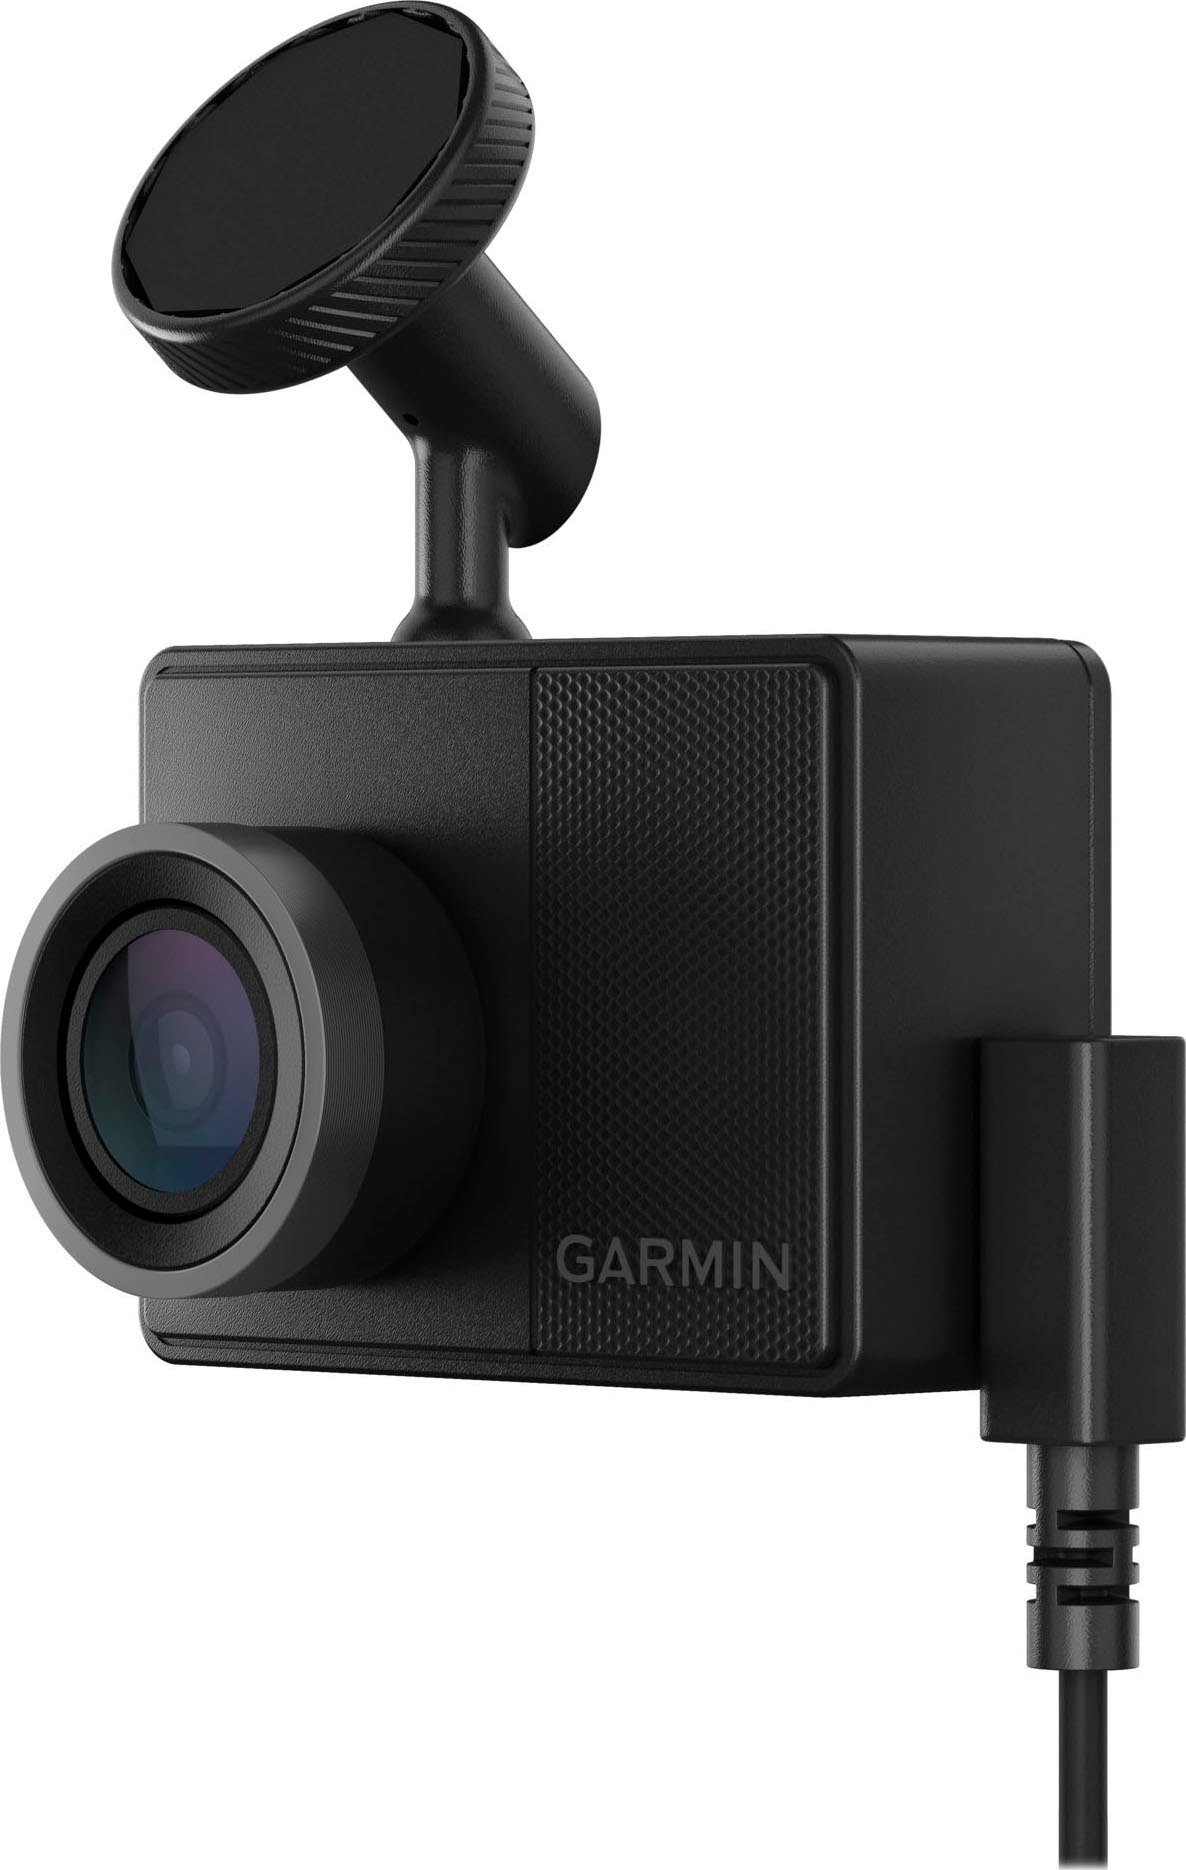 (Wi-Fi) 57 (WQHD, Bluetooth, Dashcam WLAN Garmin Dash Cam™